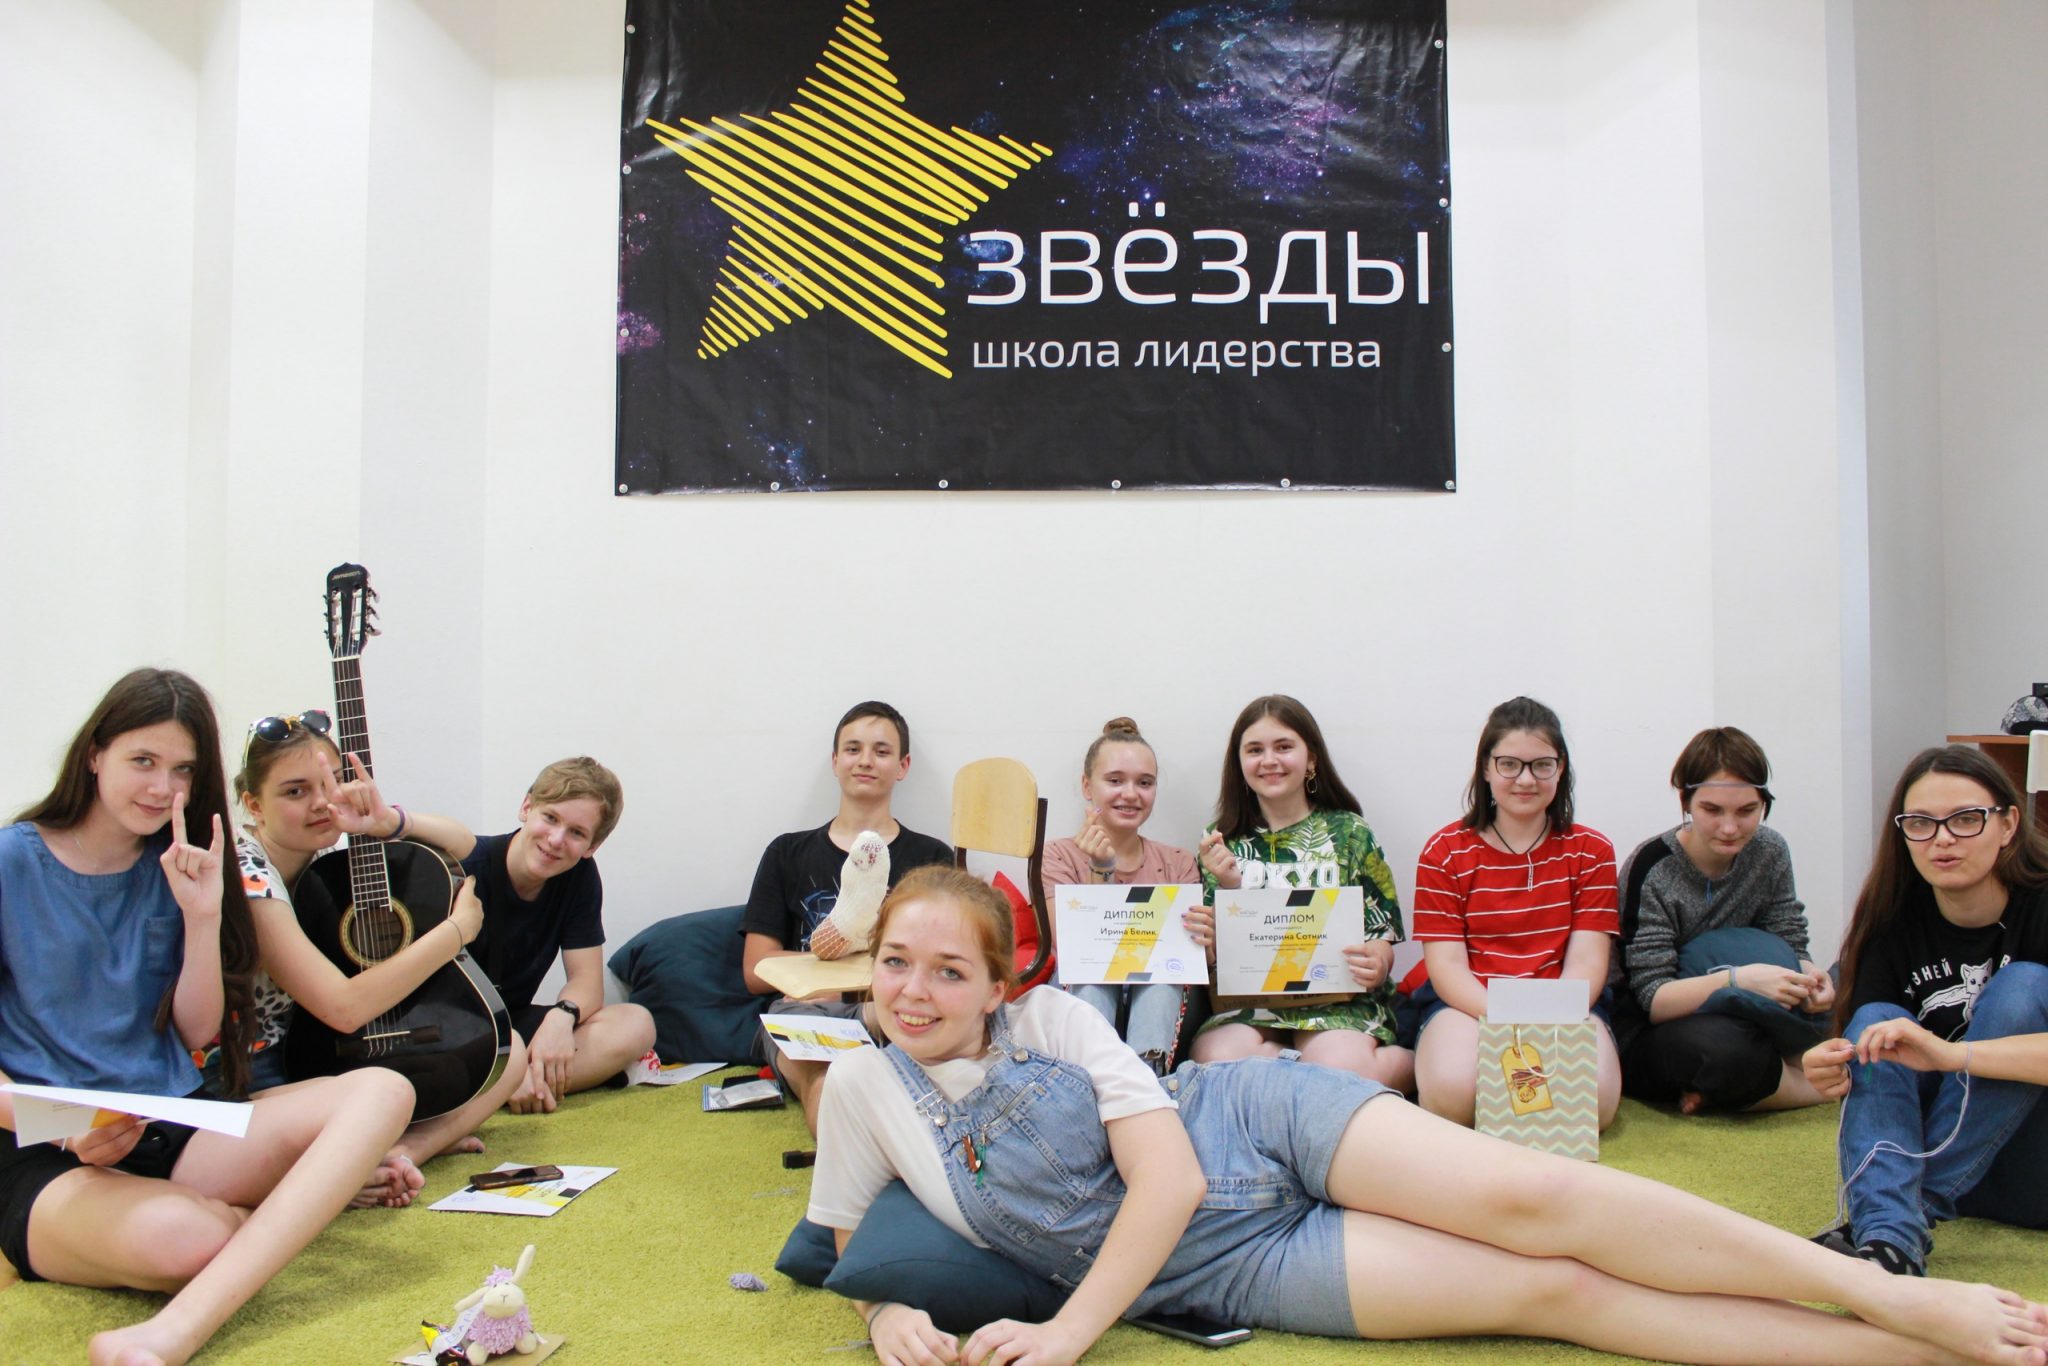 «Летняя городская площадка школы лидерства Звёзды» – Городской лагерь в Томске, фото 7